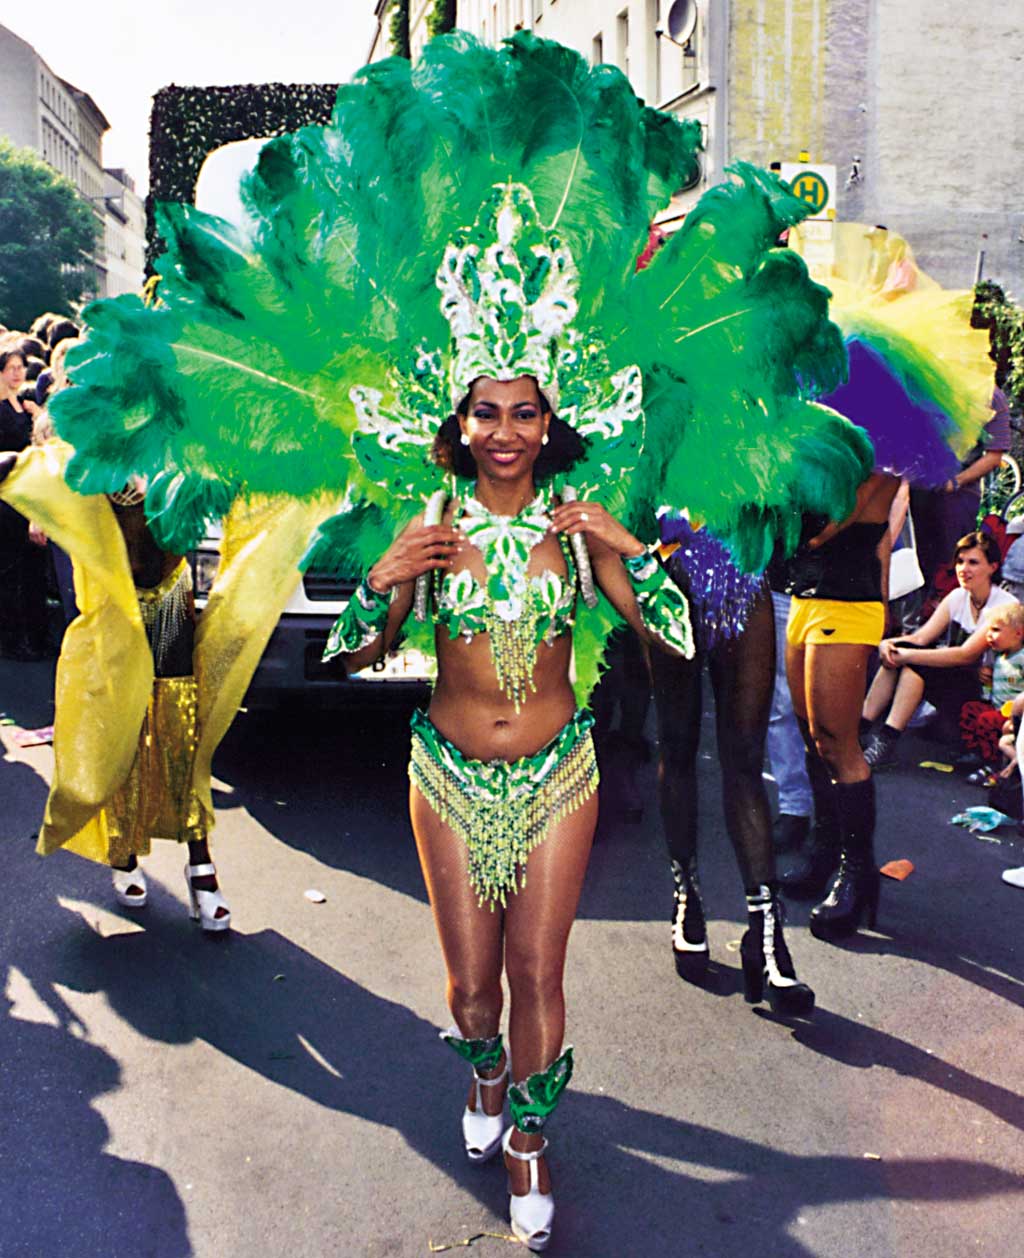 bilder/karneval-der-kulturen-'98.jpg, 0 bytes